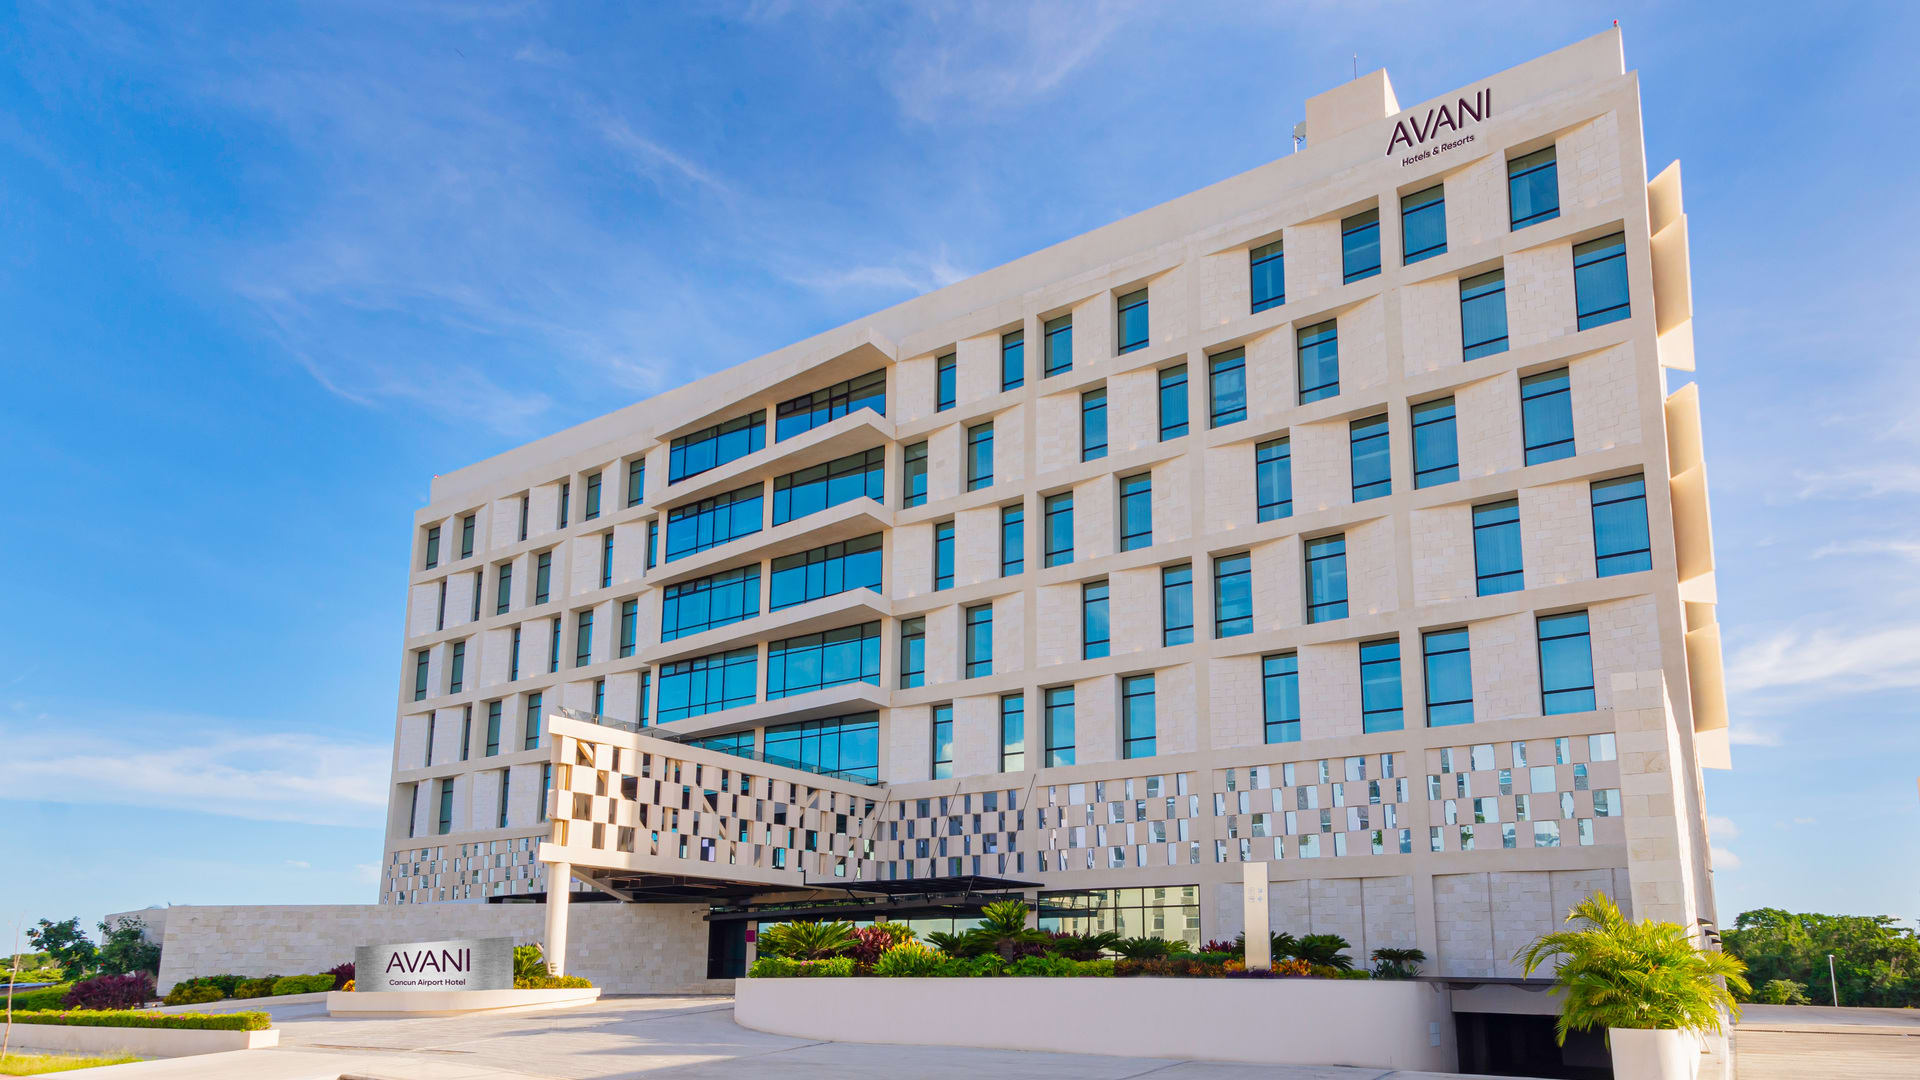  Cancun Airport Hotels | Avani Cancun Airport Hotel